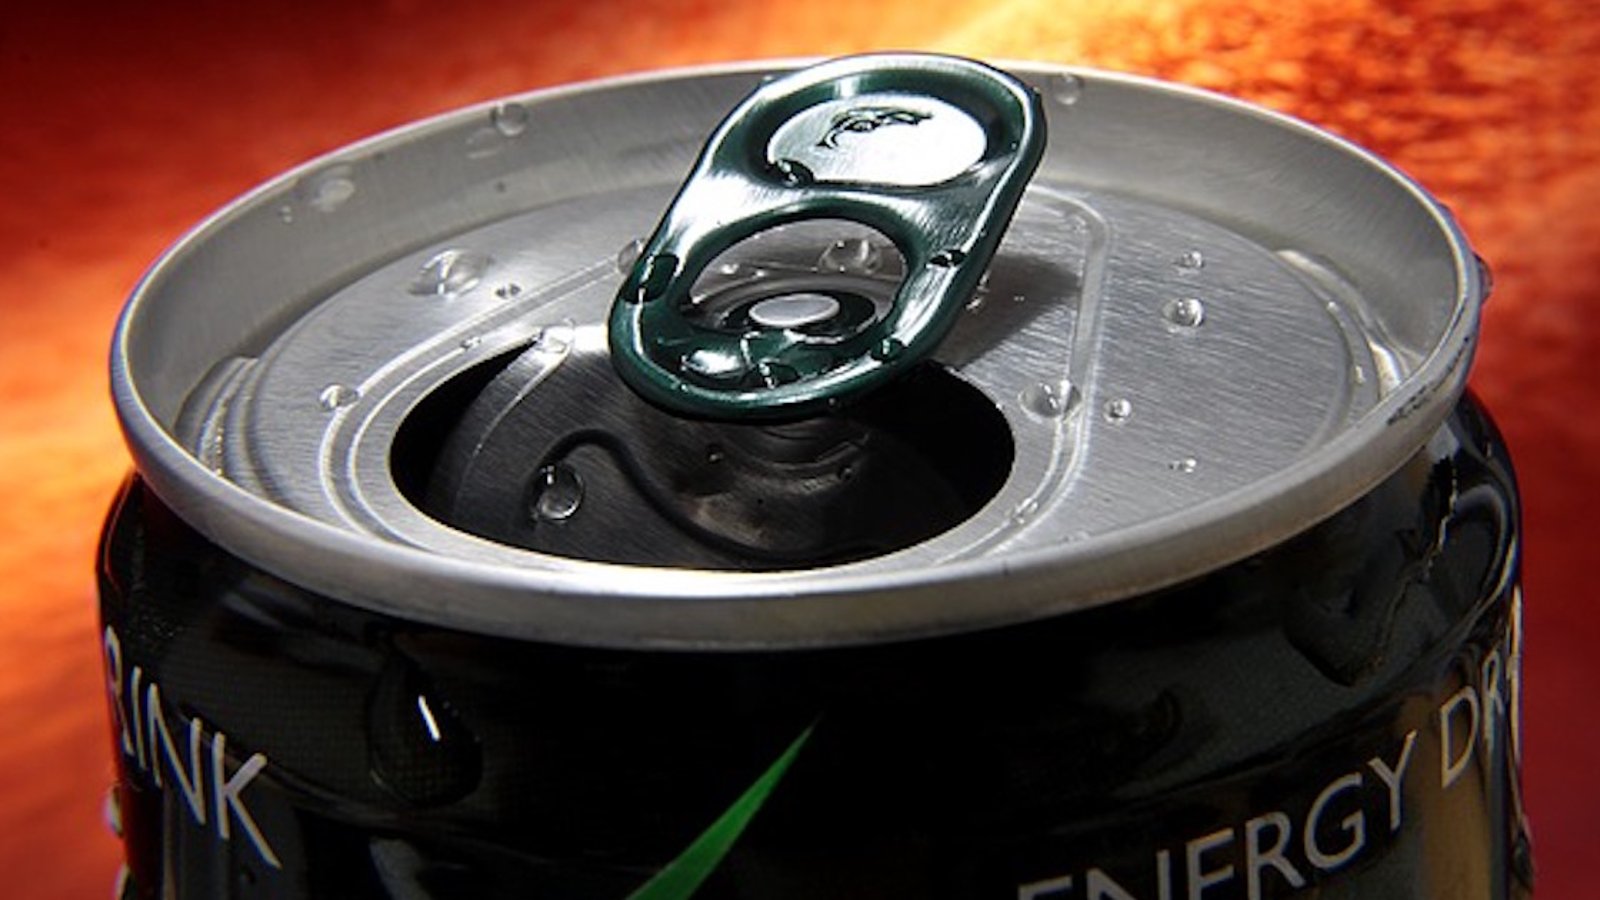 Selon une étude, une seule canette de boisson énergisante pourrait être très dangereuse pour la santé et même la vie!